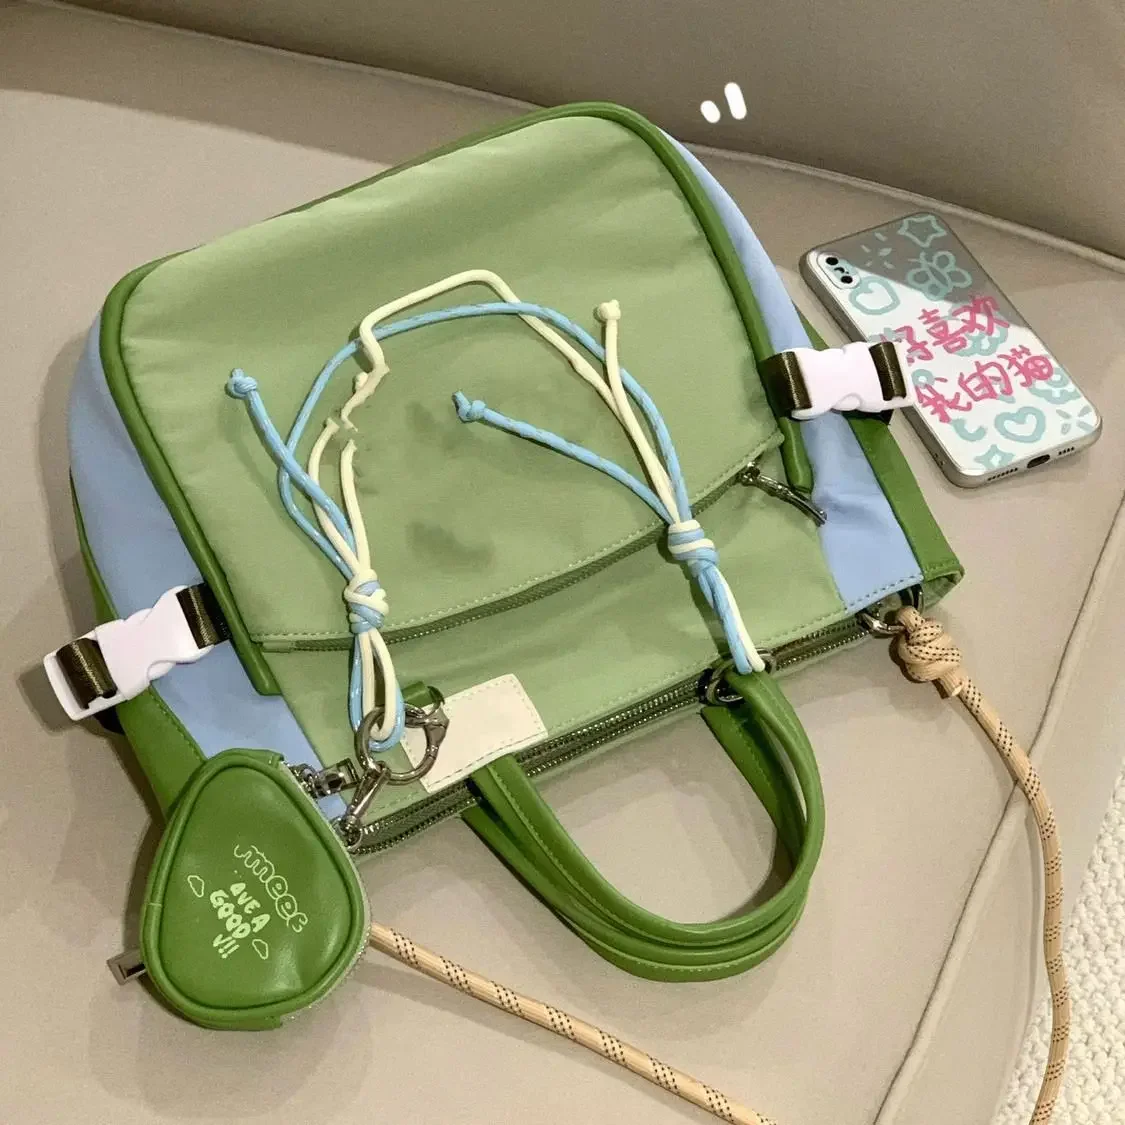 Ty fashion tote cute nylon canvas handbag women s bags crossbody bag wallet storage bag thumb200